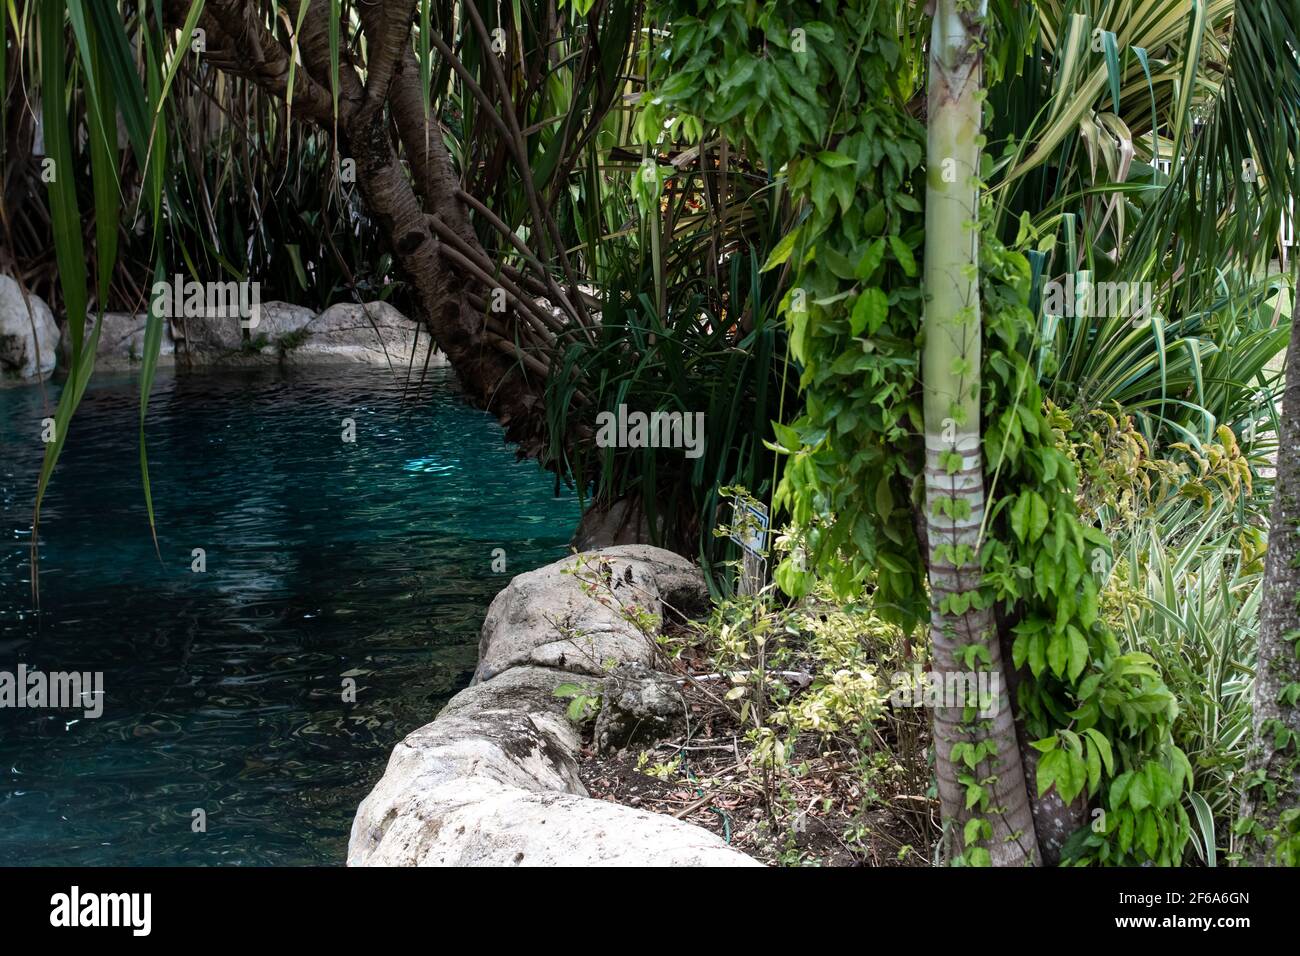 Une piscine d'hôtel-boutique des Caraïbes, inspirée d'un lagon bleu turquoise, entourée de feuilles de palmiers et de feuillage vert. Entouré de roches calcaires blanches. Banque D'Images